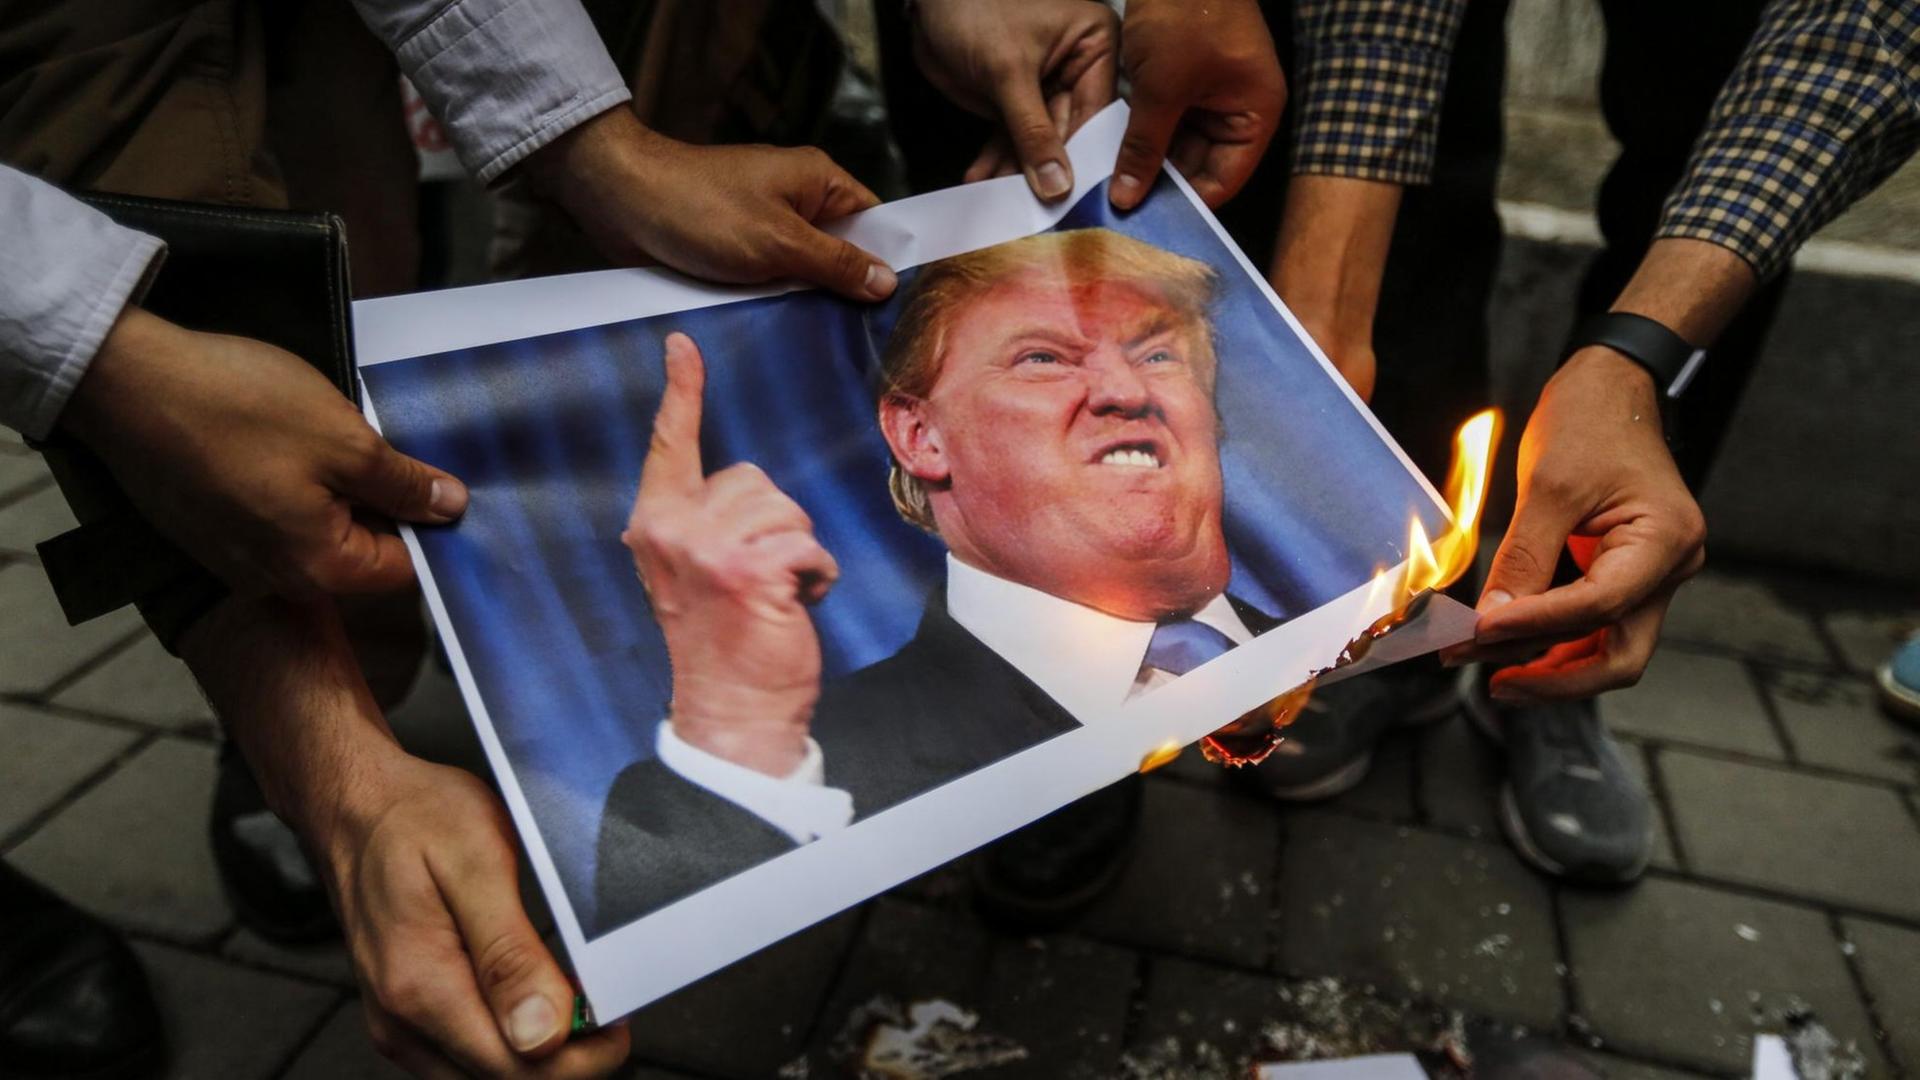 Man sieht Hände. Sie halten ein Bild von dem Präsidenten von dem Land USA fest. Eine Hand hält ein brennendes Feuerzeug an das Papier.